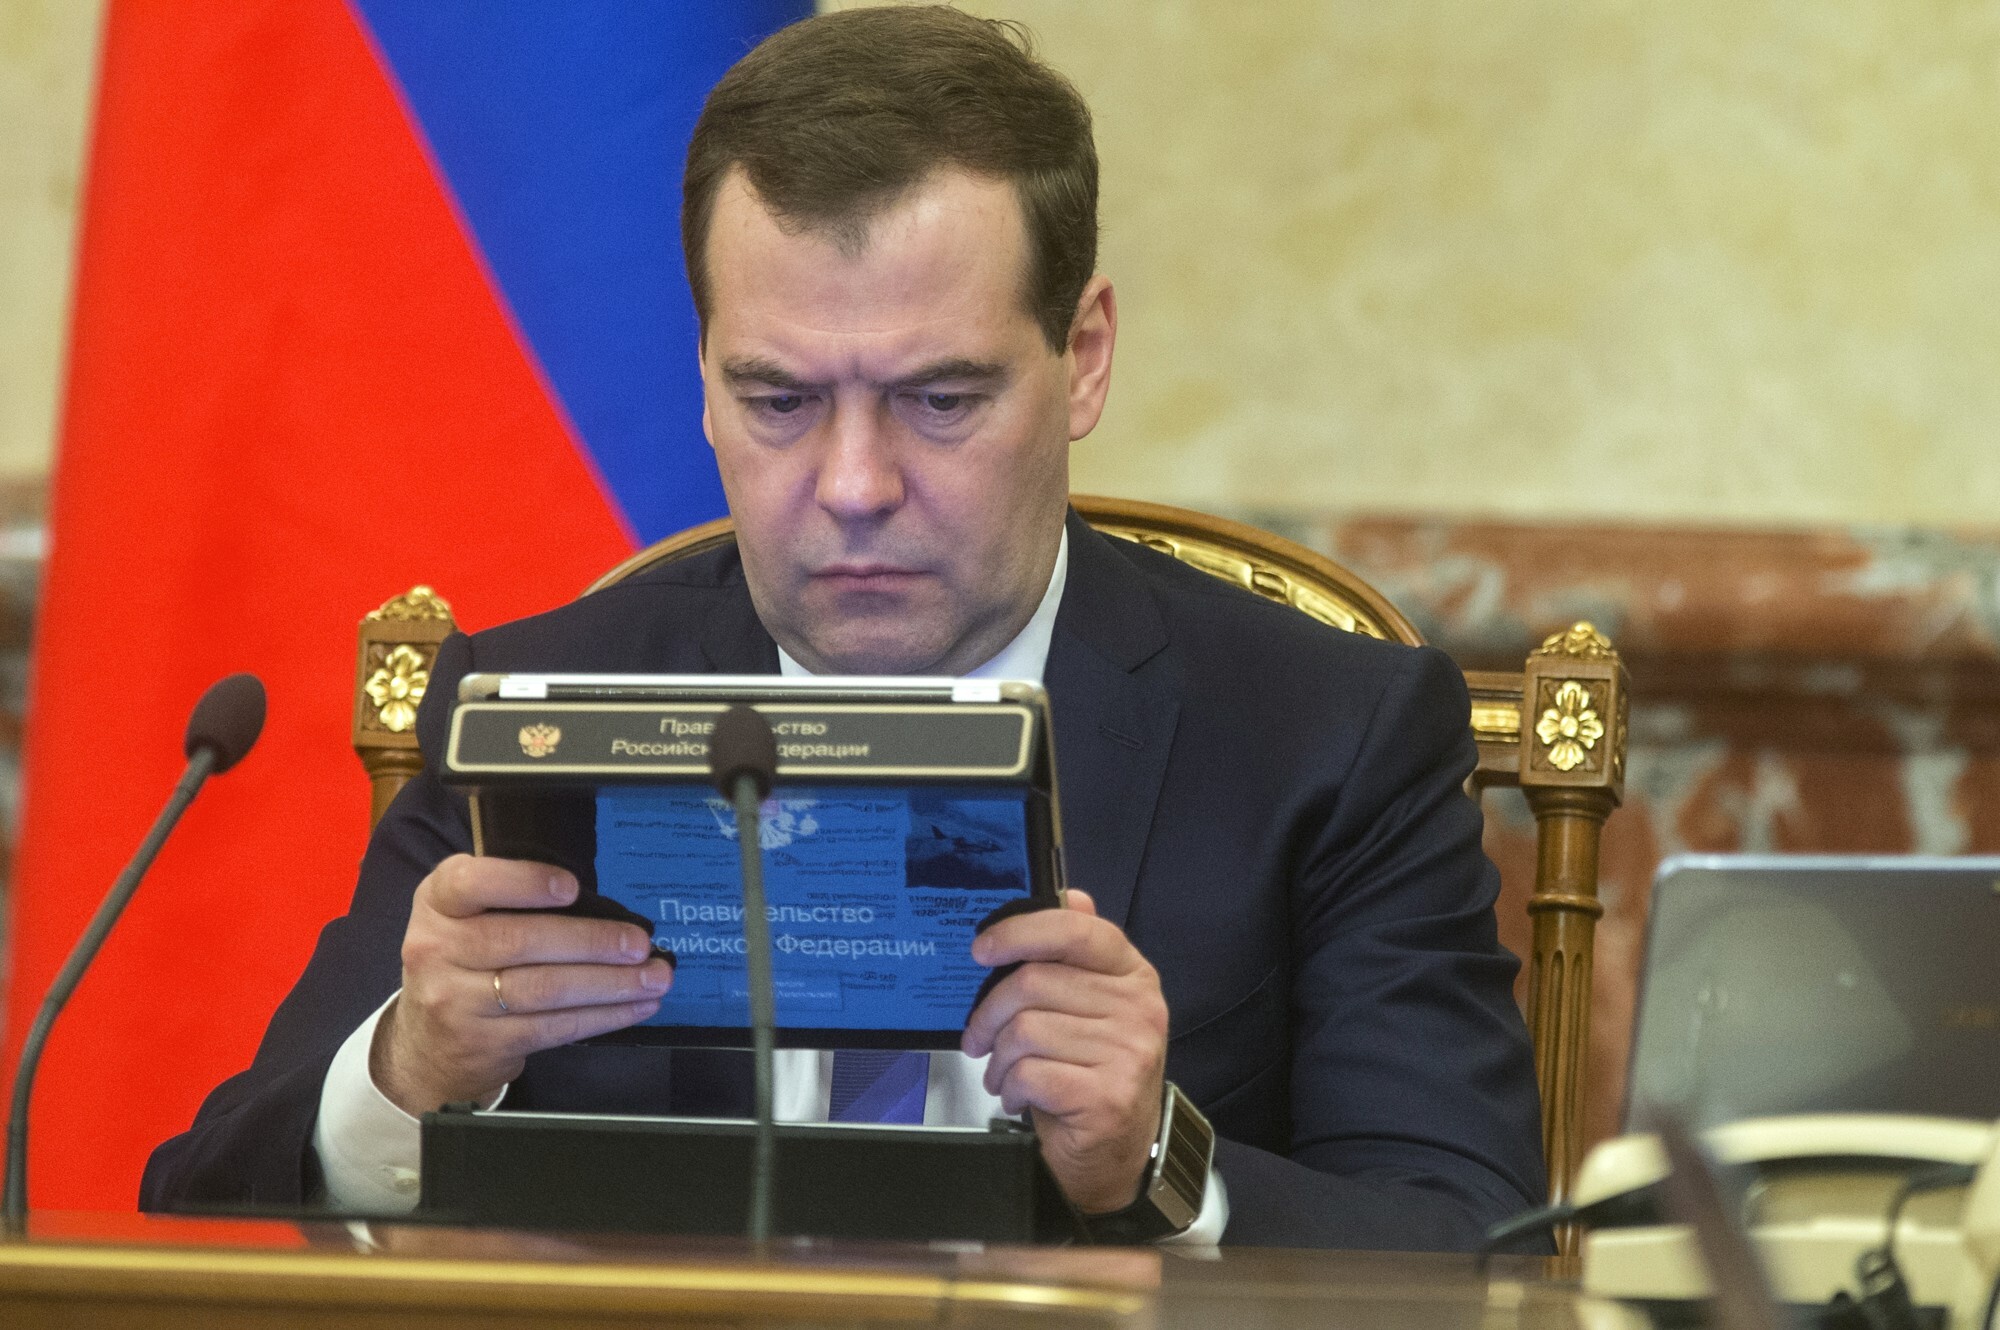 Медведев показал карту россии. Медведев с айпадом.